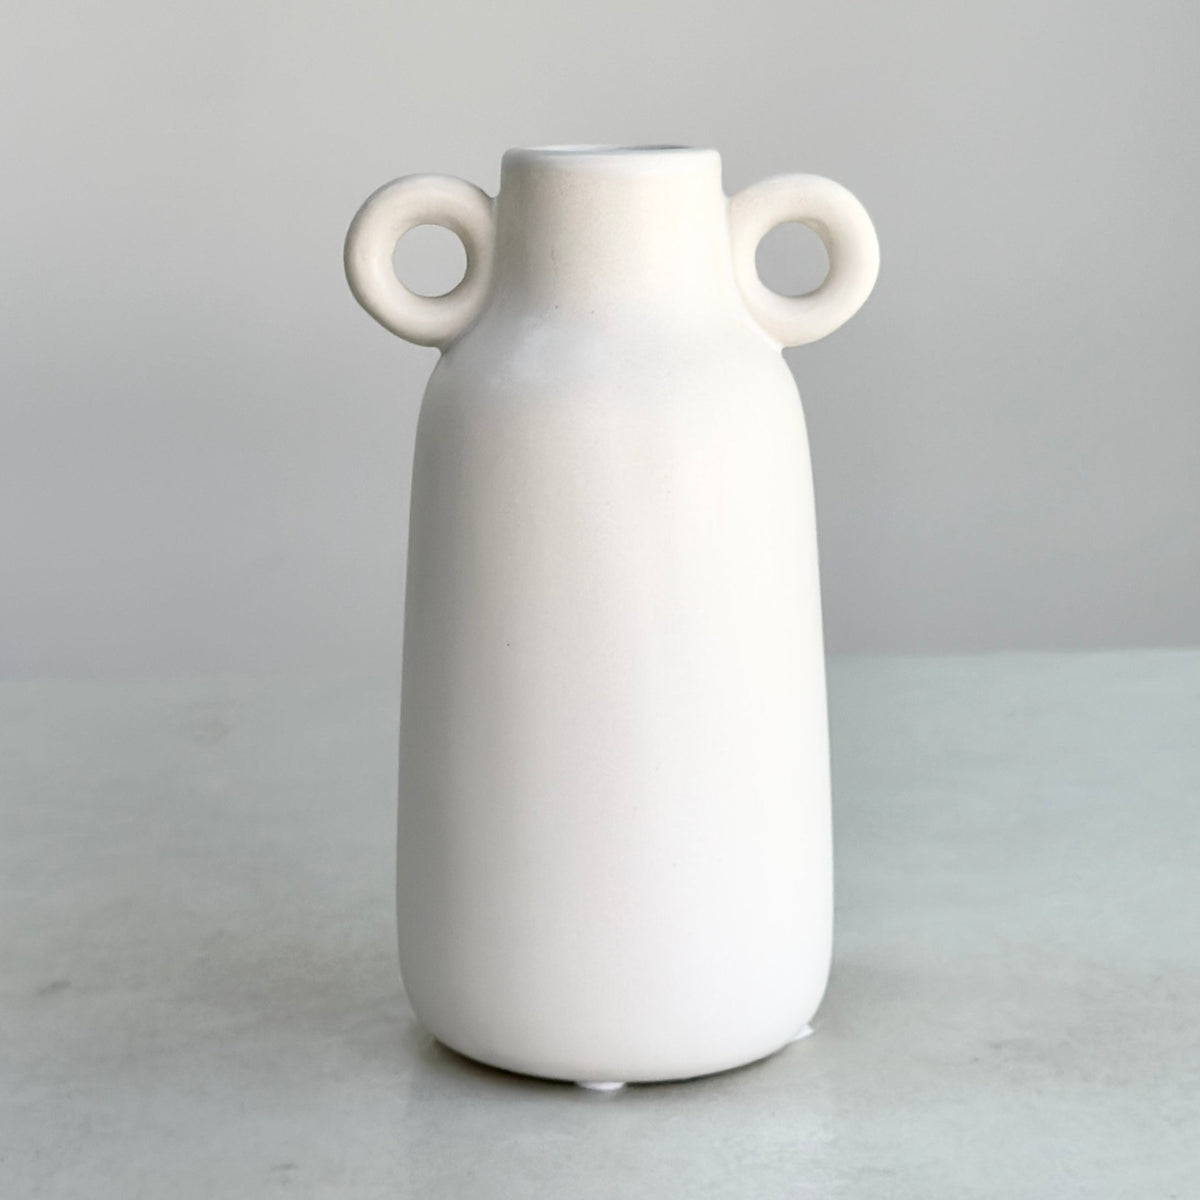 Ceramic White Vase Side Rings Handles